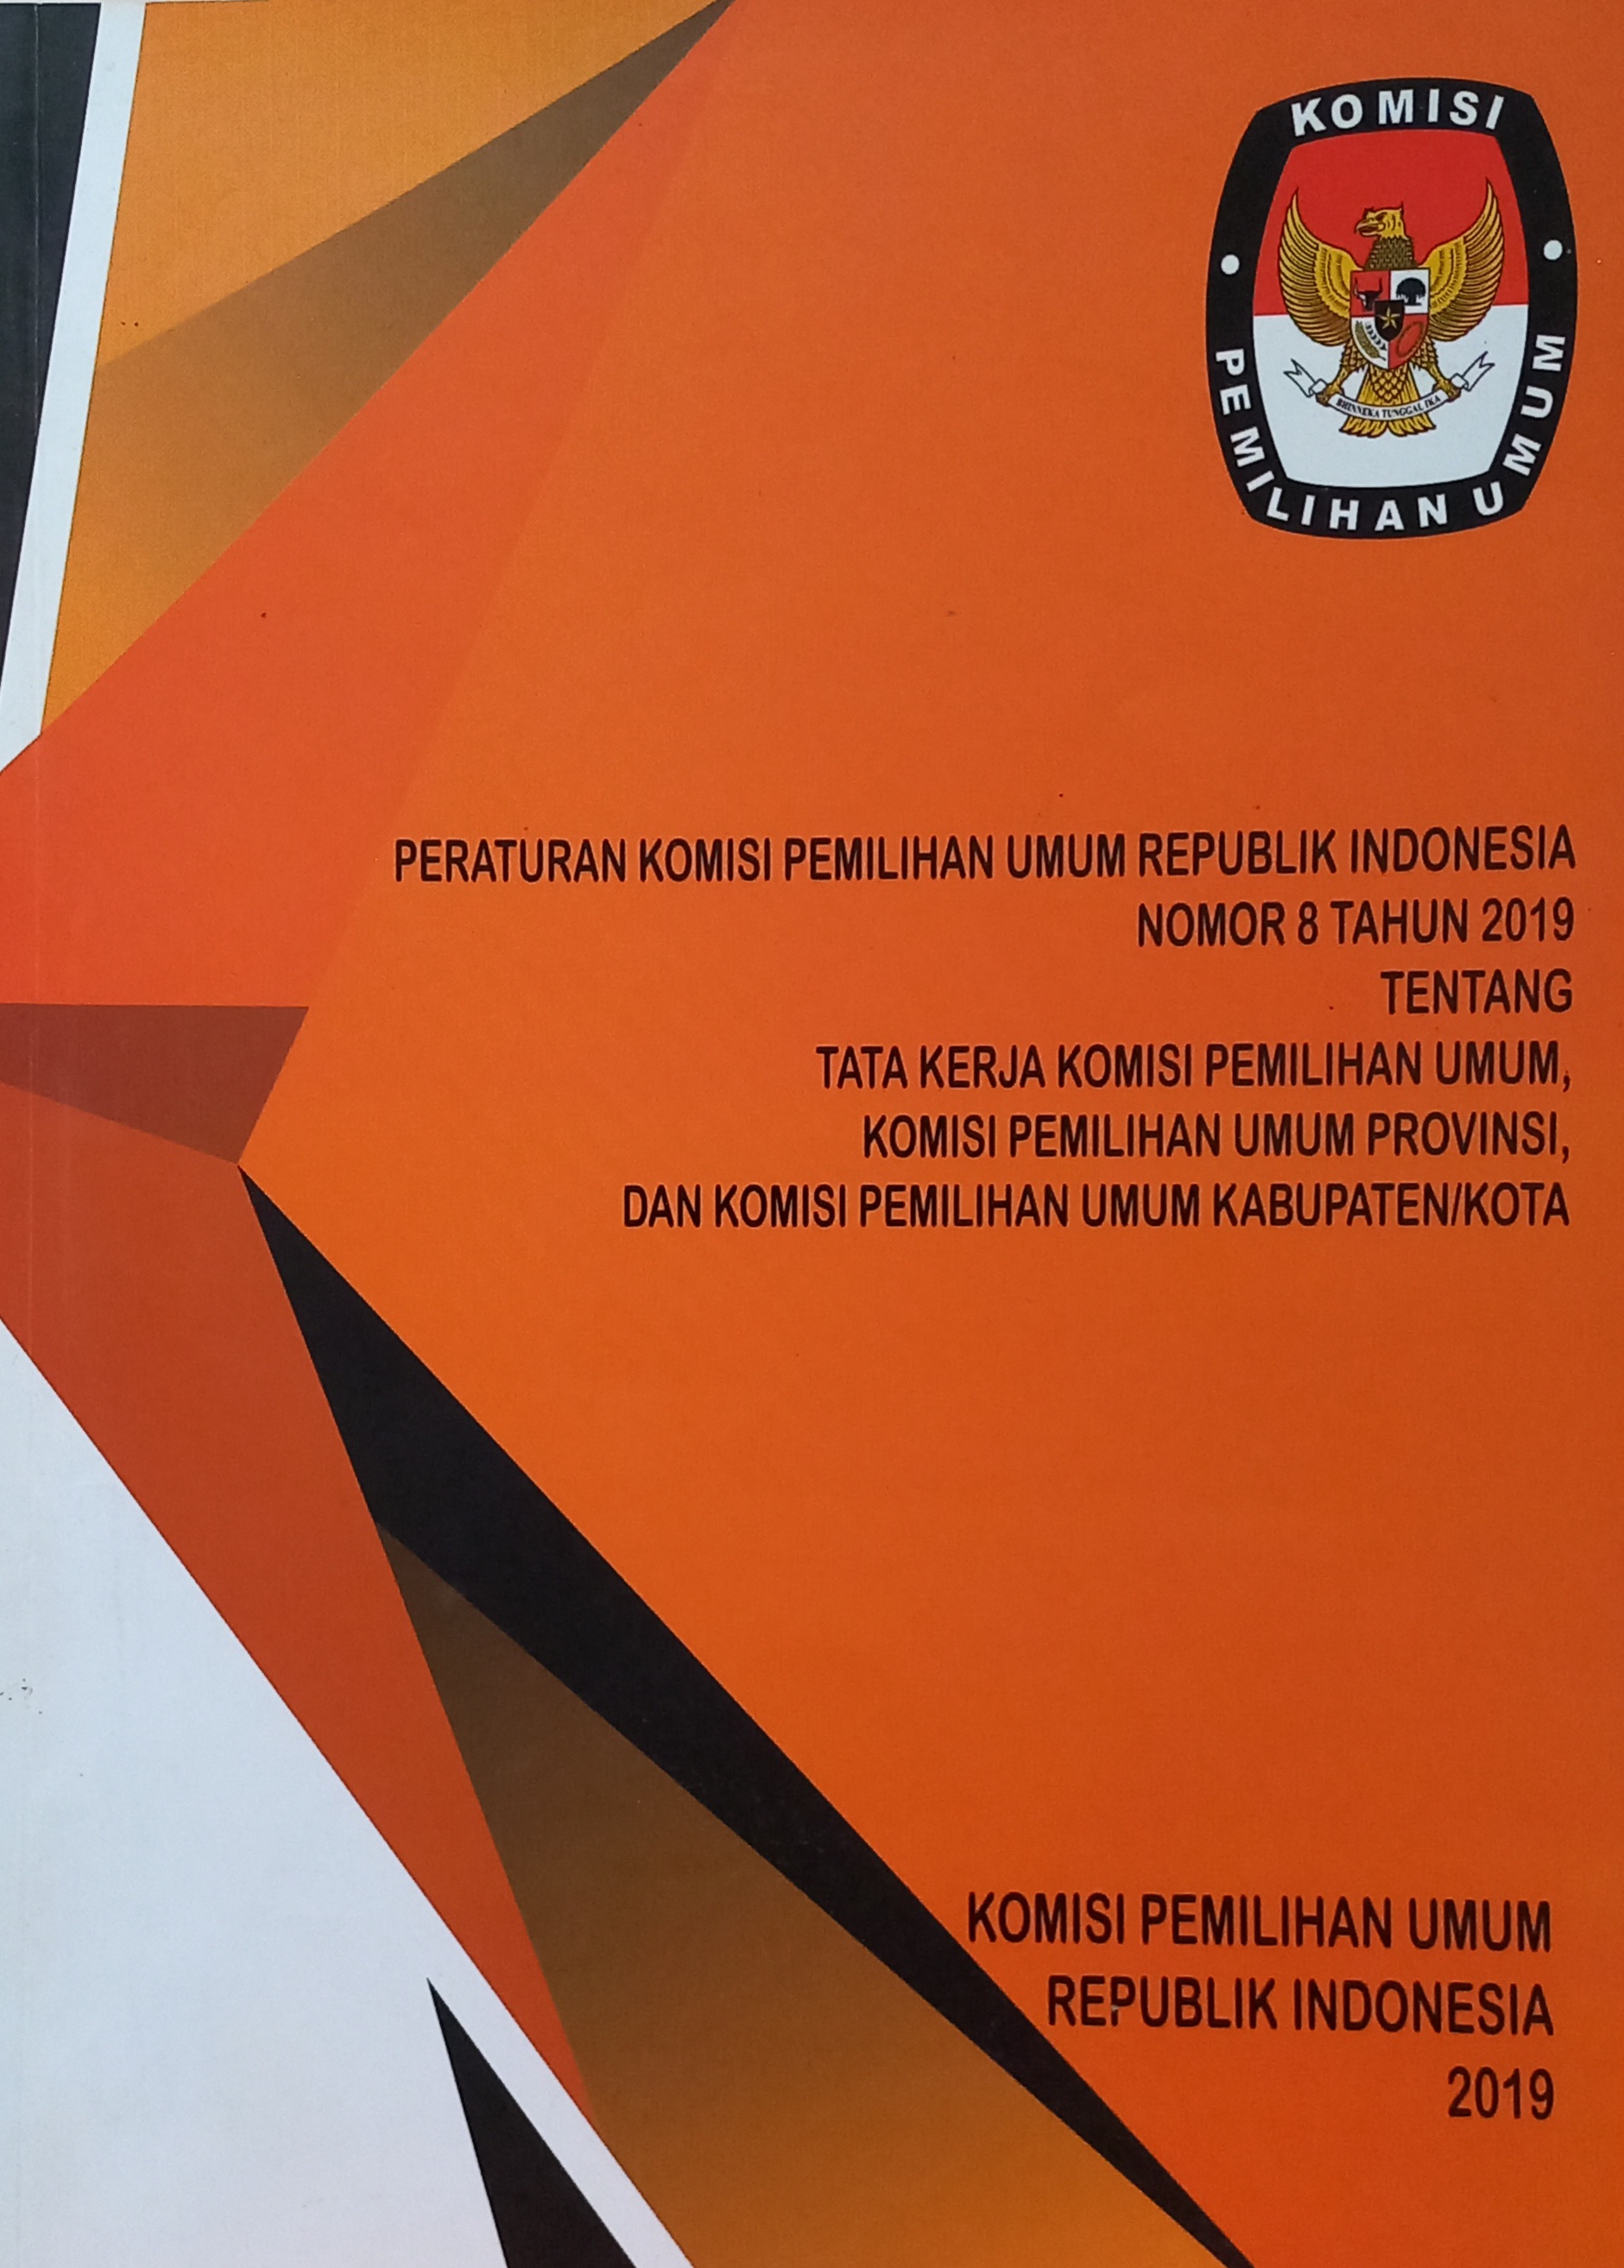 Peraturan Komisi Pemilihan Umum Republik Indonesia Nomor 8 Tahun 2019 Tentang Tata Kerja Komisi Pemilihan Umum, Komisi Pemilihan Umum Provinsi, dan Komisi Pemilihan Umum Kabupaten/Kota